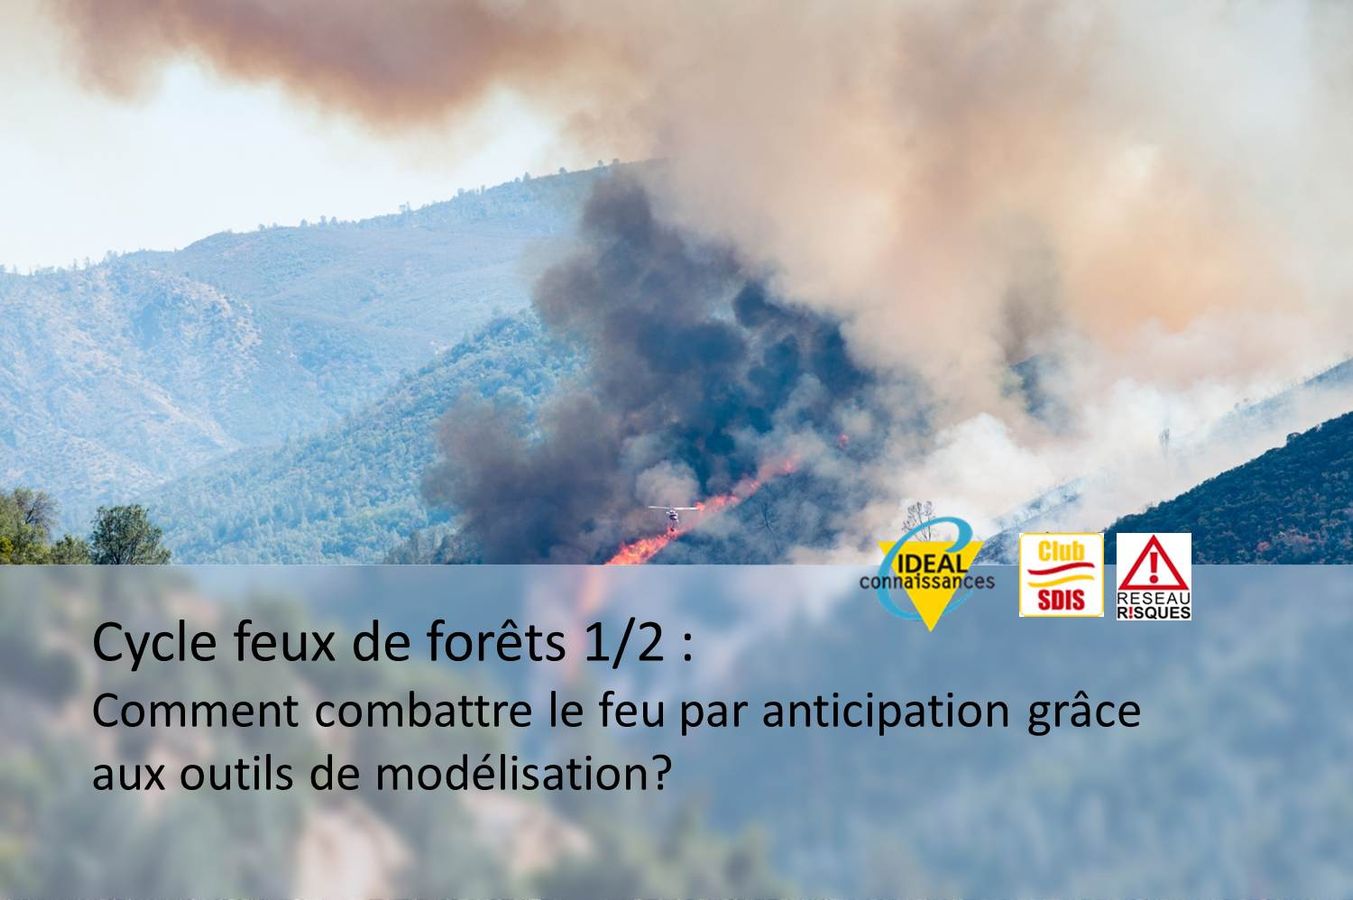 [Cycle feux de forêts] Comment combattre le feu par anticipation grâce aux outils de modélisation? 